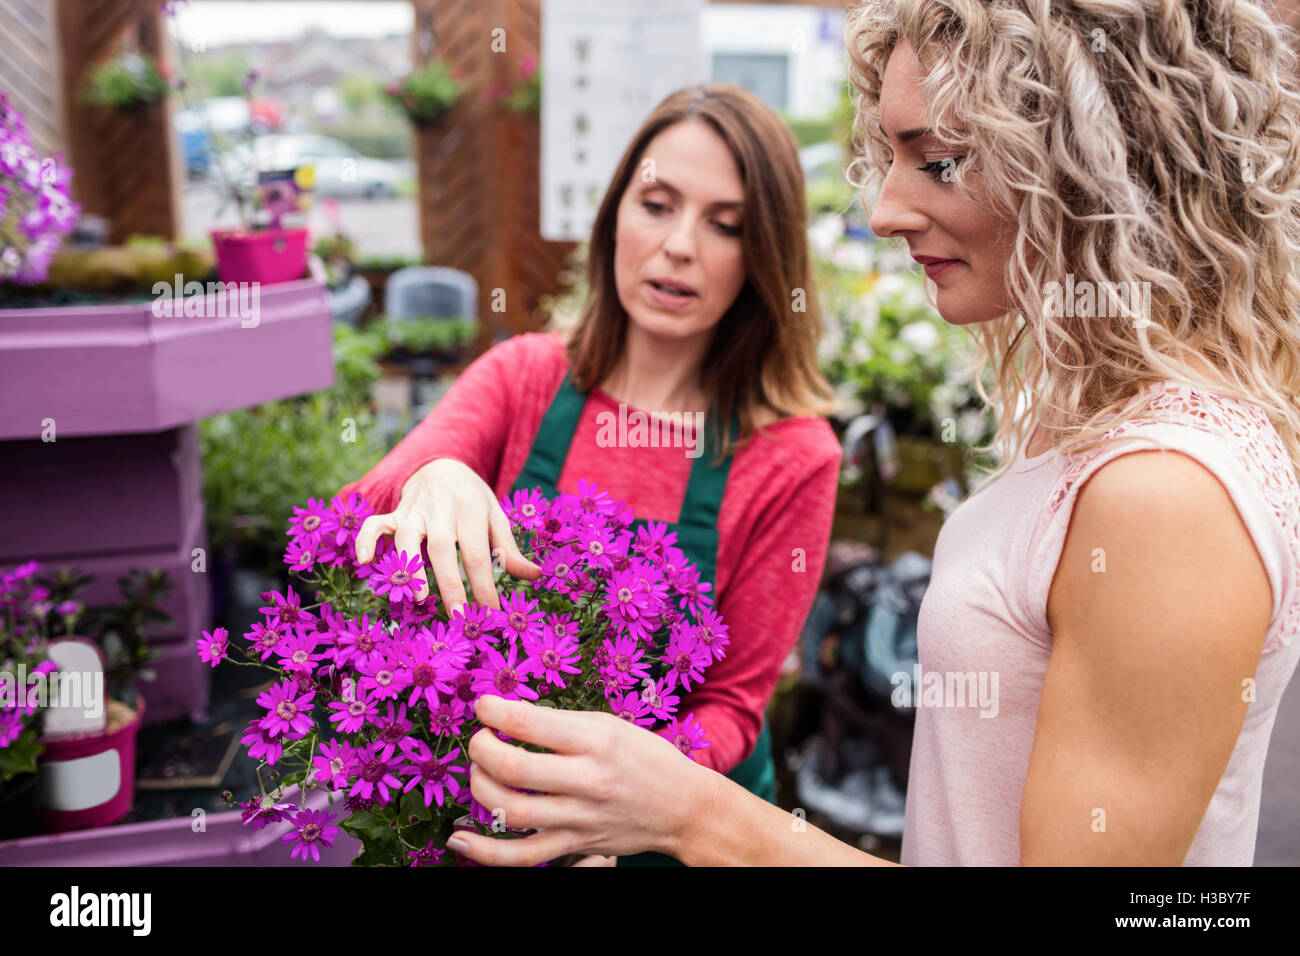 Fioraio e donna guardando i fiori Foto Stock